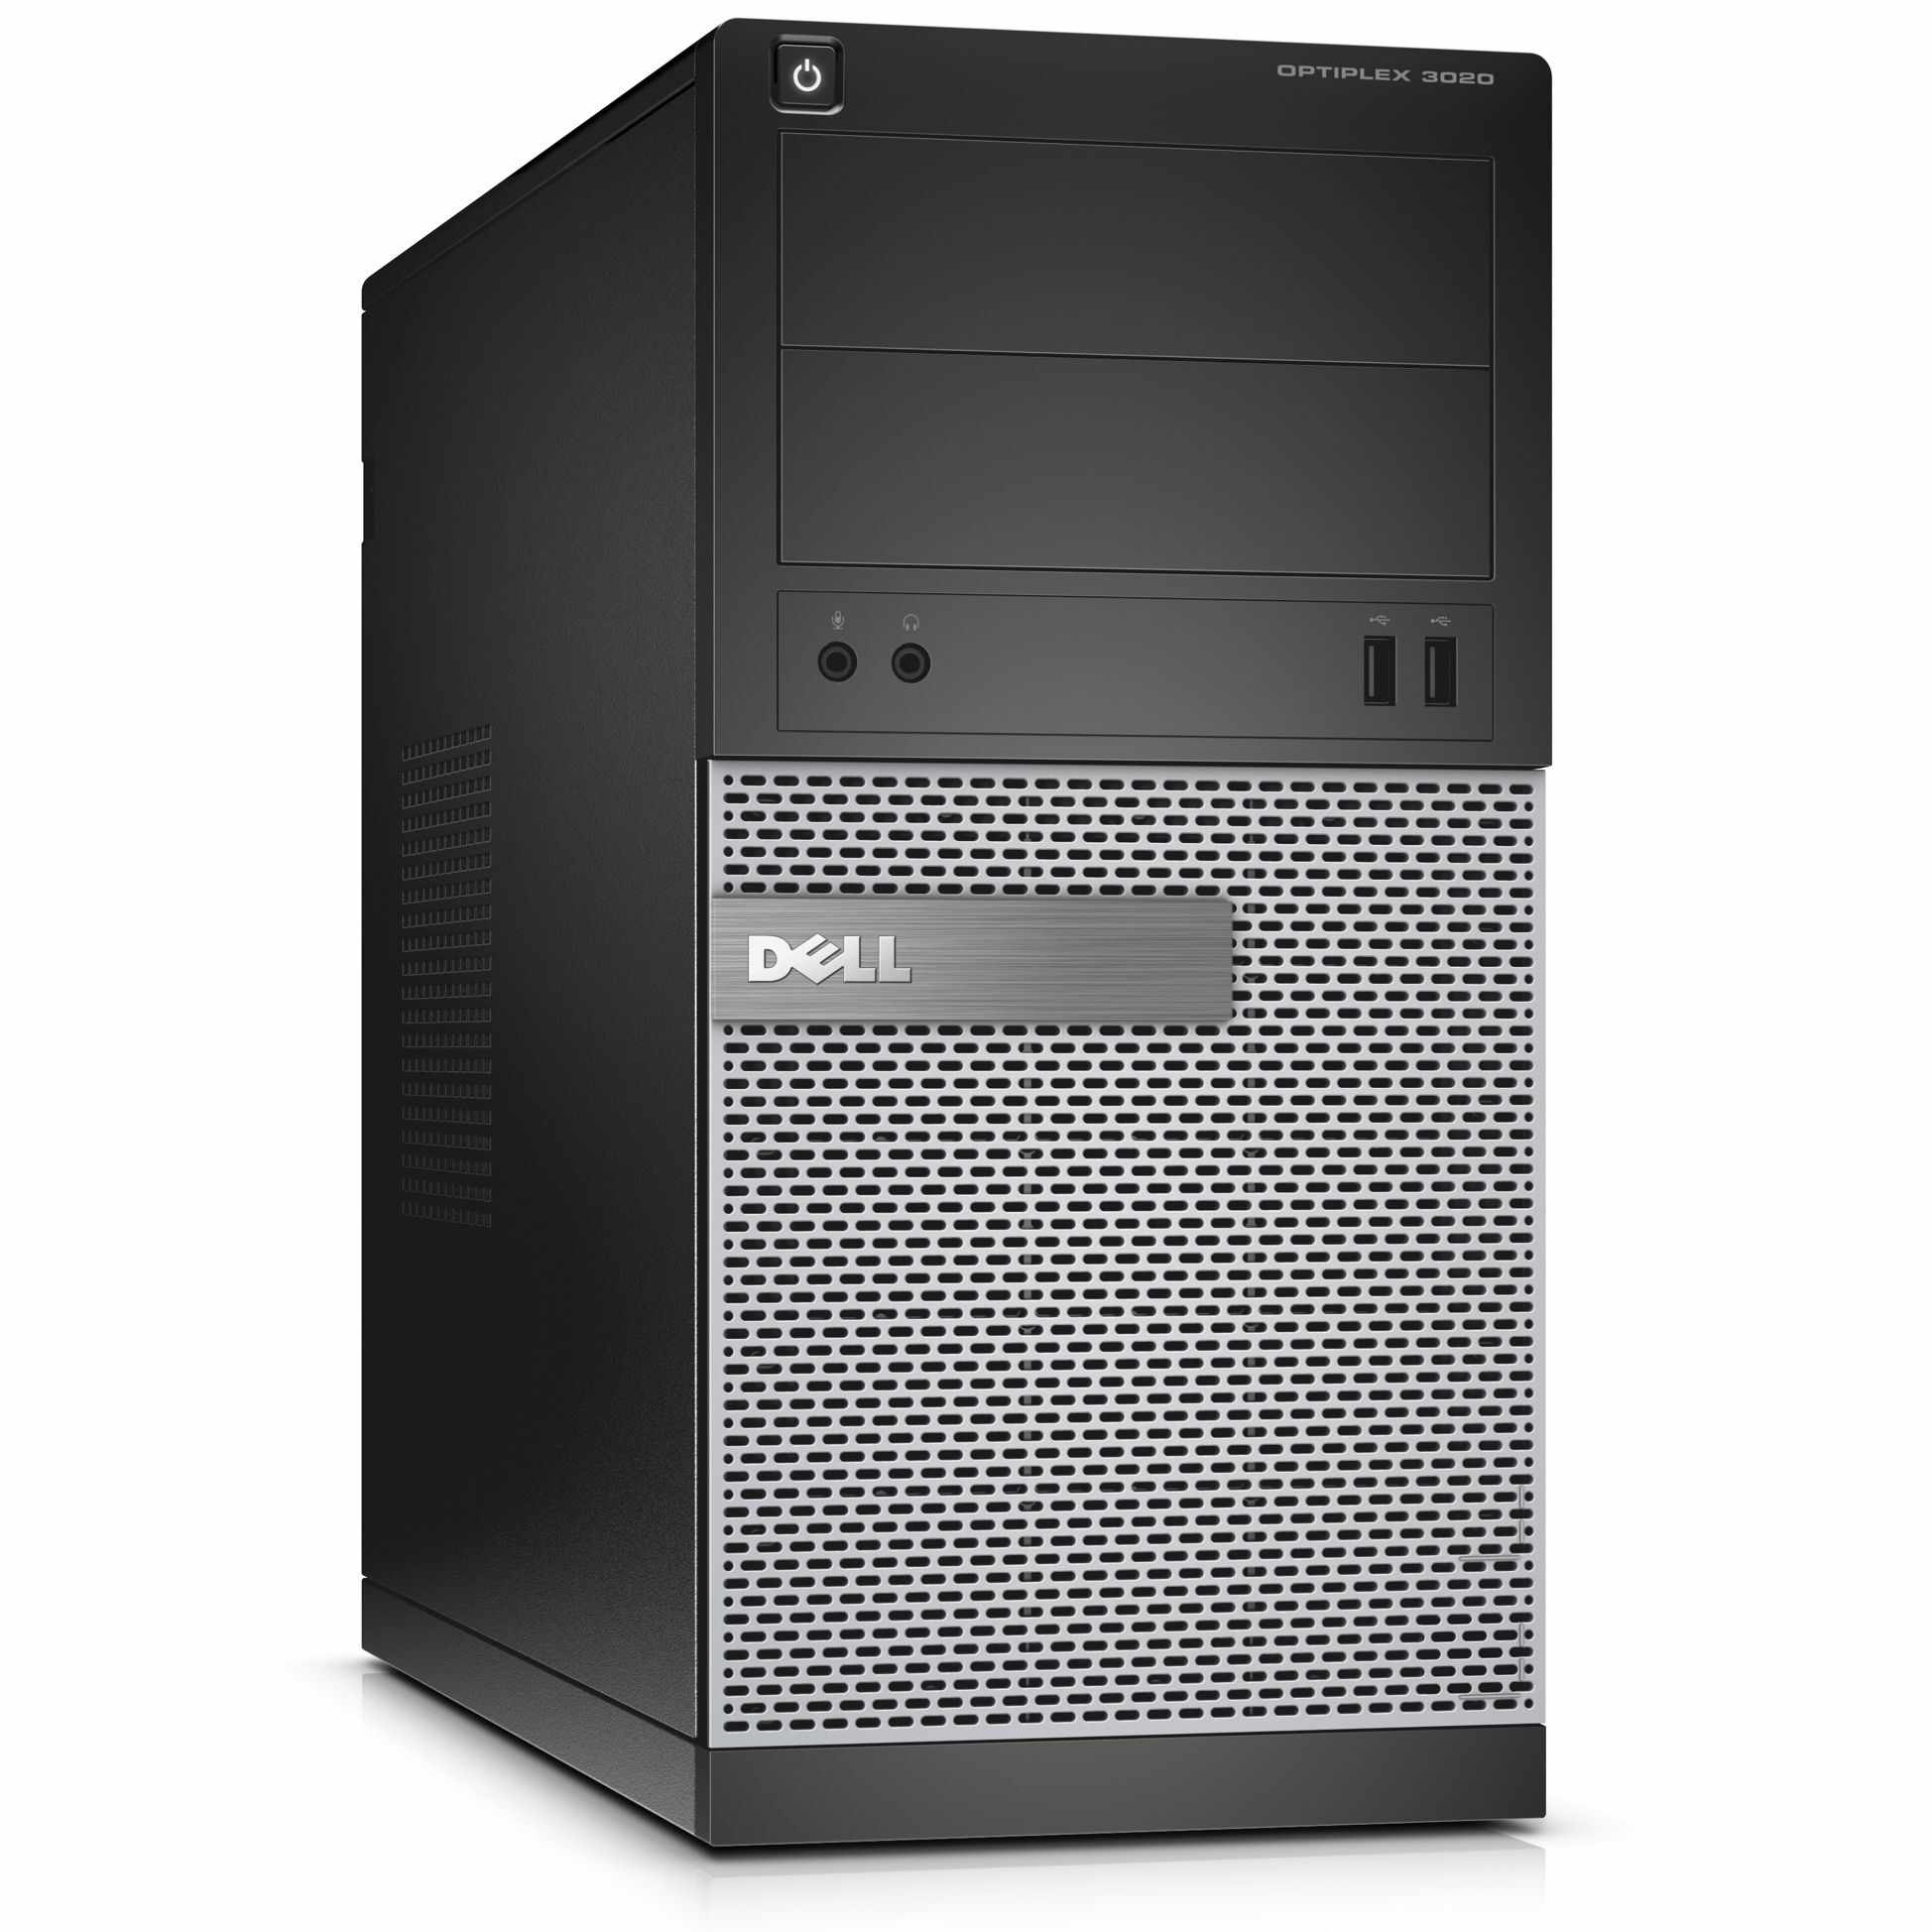 Sistem Desktop PC Dell OptiPlex 3020, Intel Core i5-4590, 4GB DDR3, HDD 500GB, Intel HD Graphics, Linux